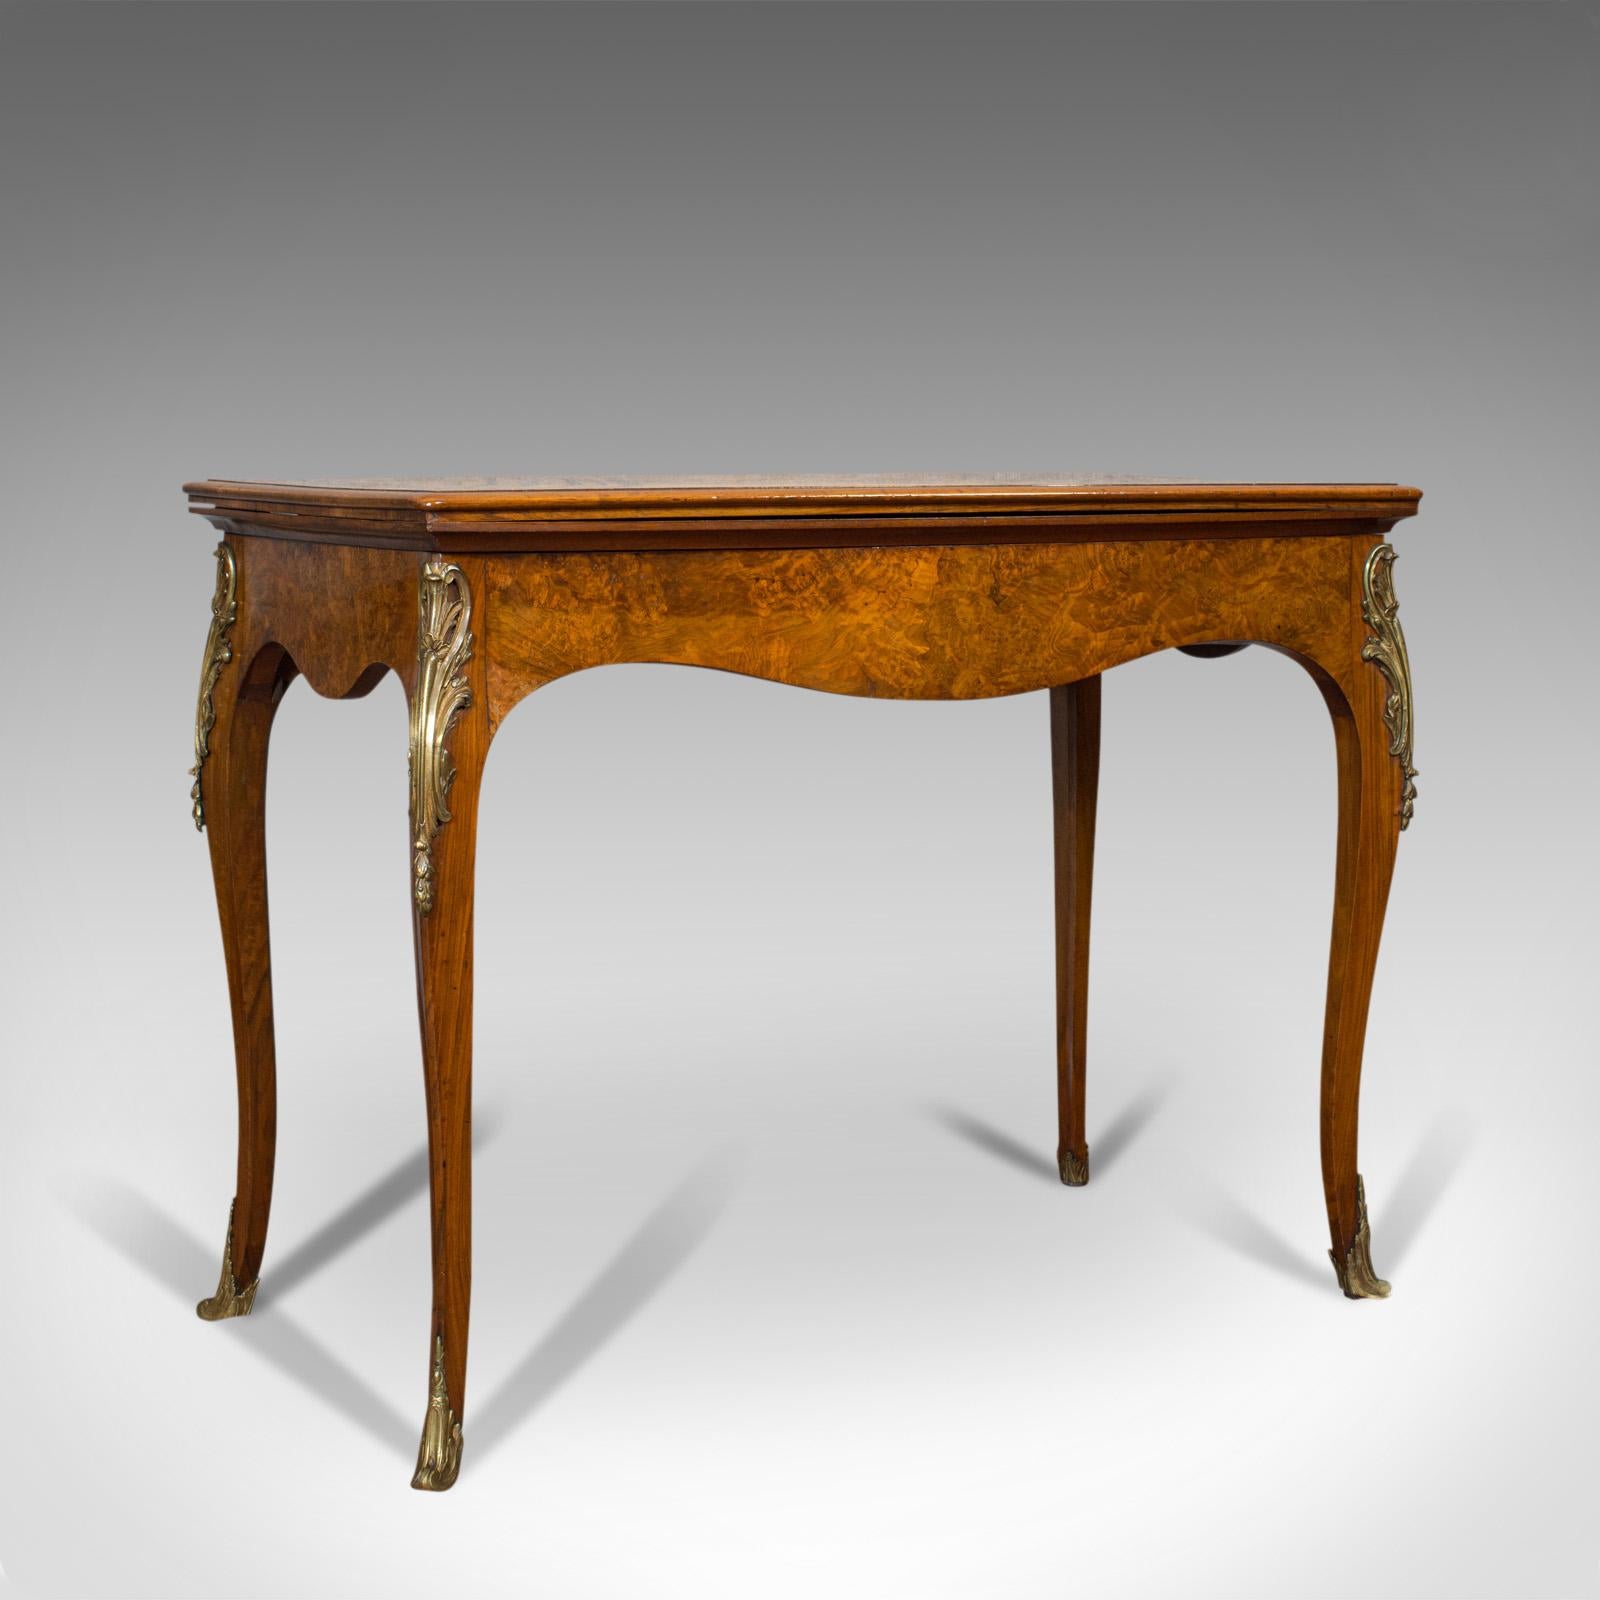 Dies ist ein antiker Kartentisch. Ein französischer Klapptisch aus Wurzelnussholz aus der viktorianischen Zeit, um 1870.

Äußerst ansprechender, seltener antiker Spieltisch
Zeigt eine wünschenswerte gealterte Patina
Exquisiter Wurzelnussbaum mit